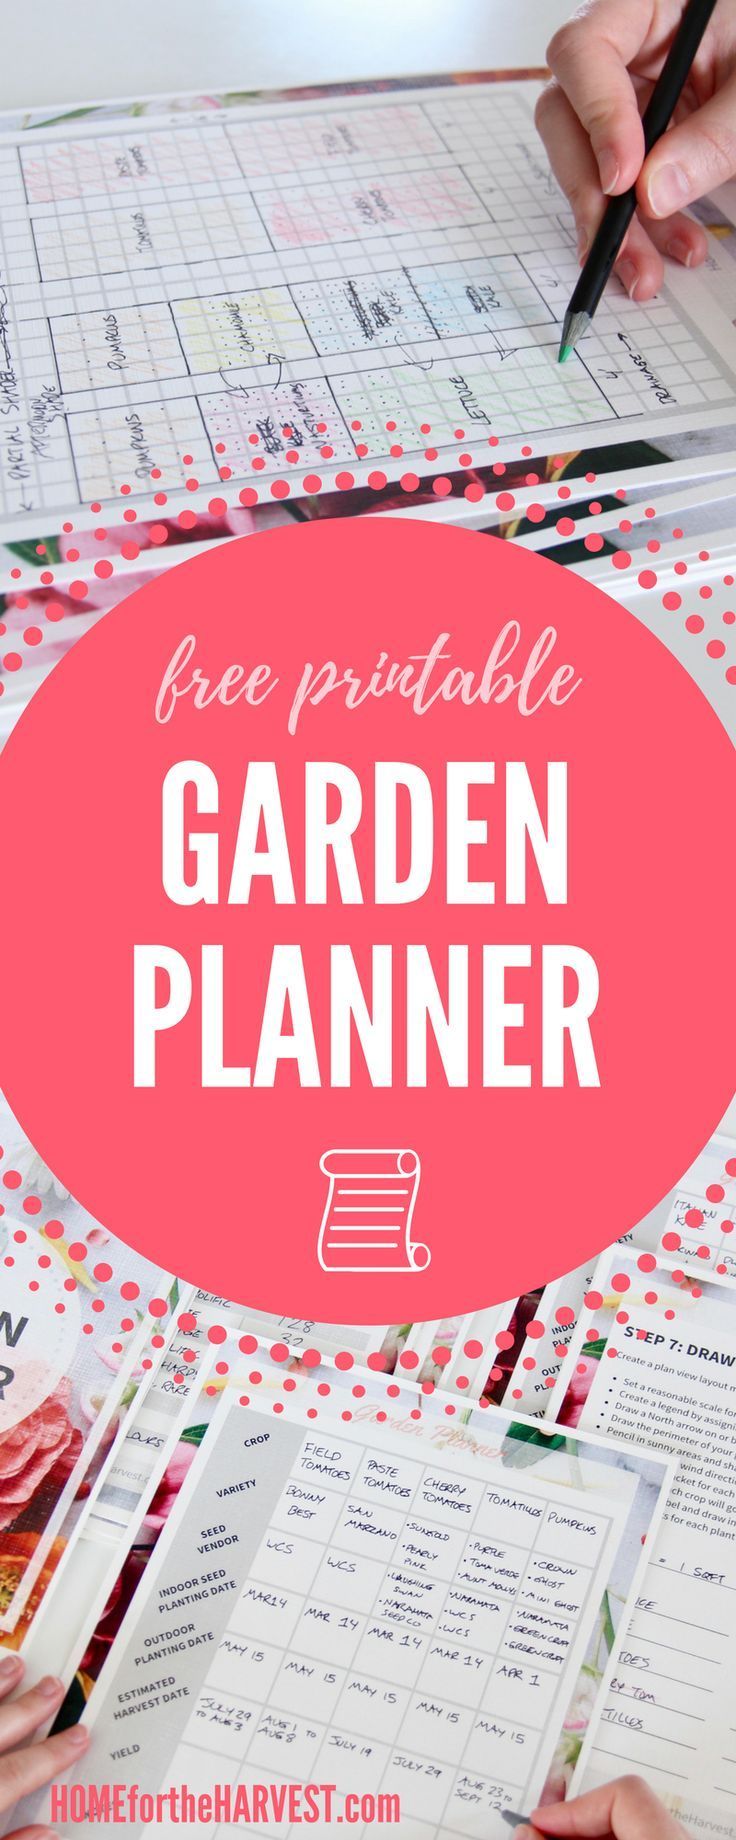 Free Vegetable Garden Planner -   23 garden landscaping layout ideas